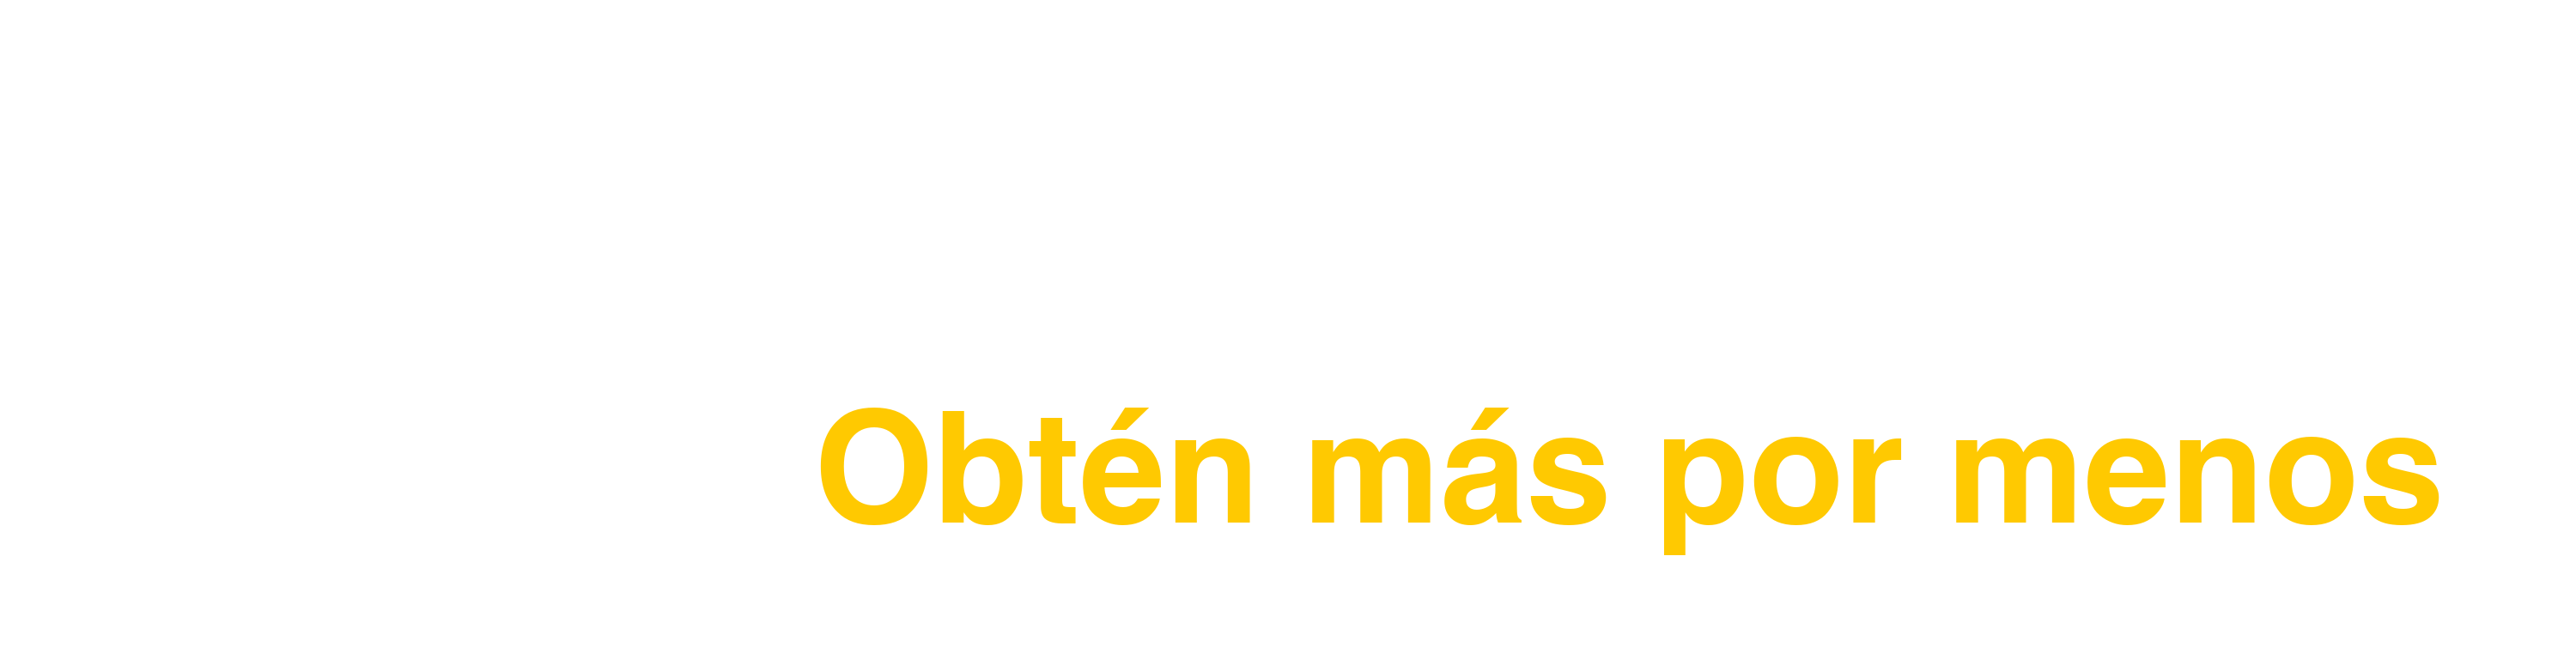 eFastrack